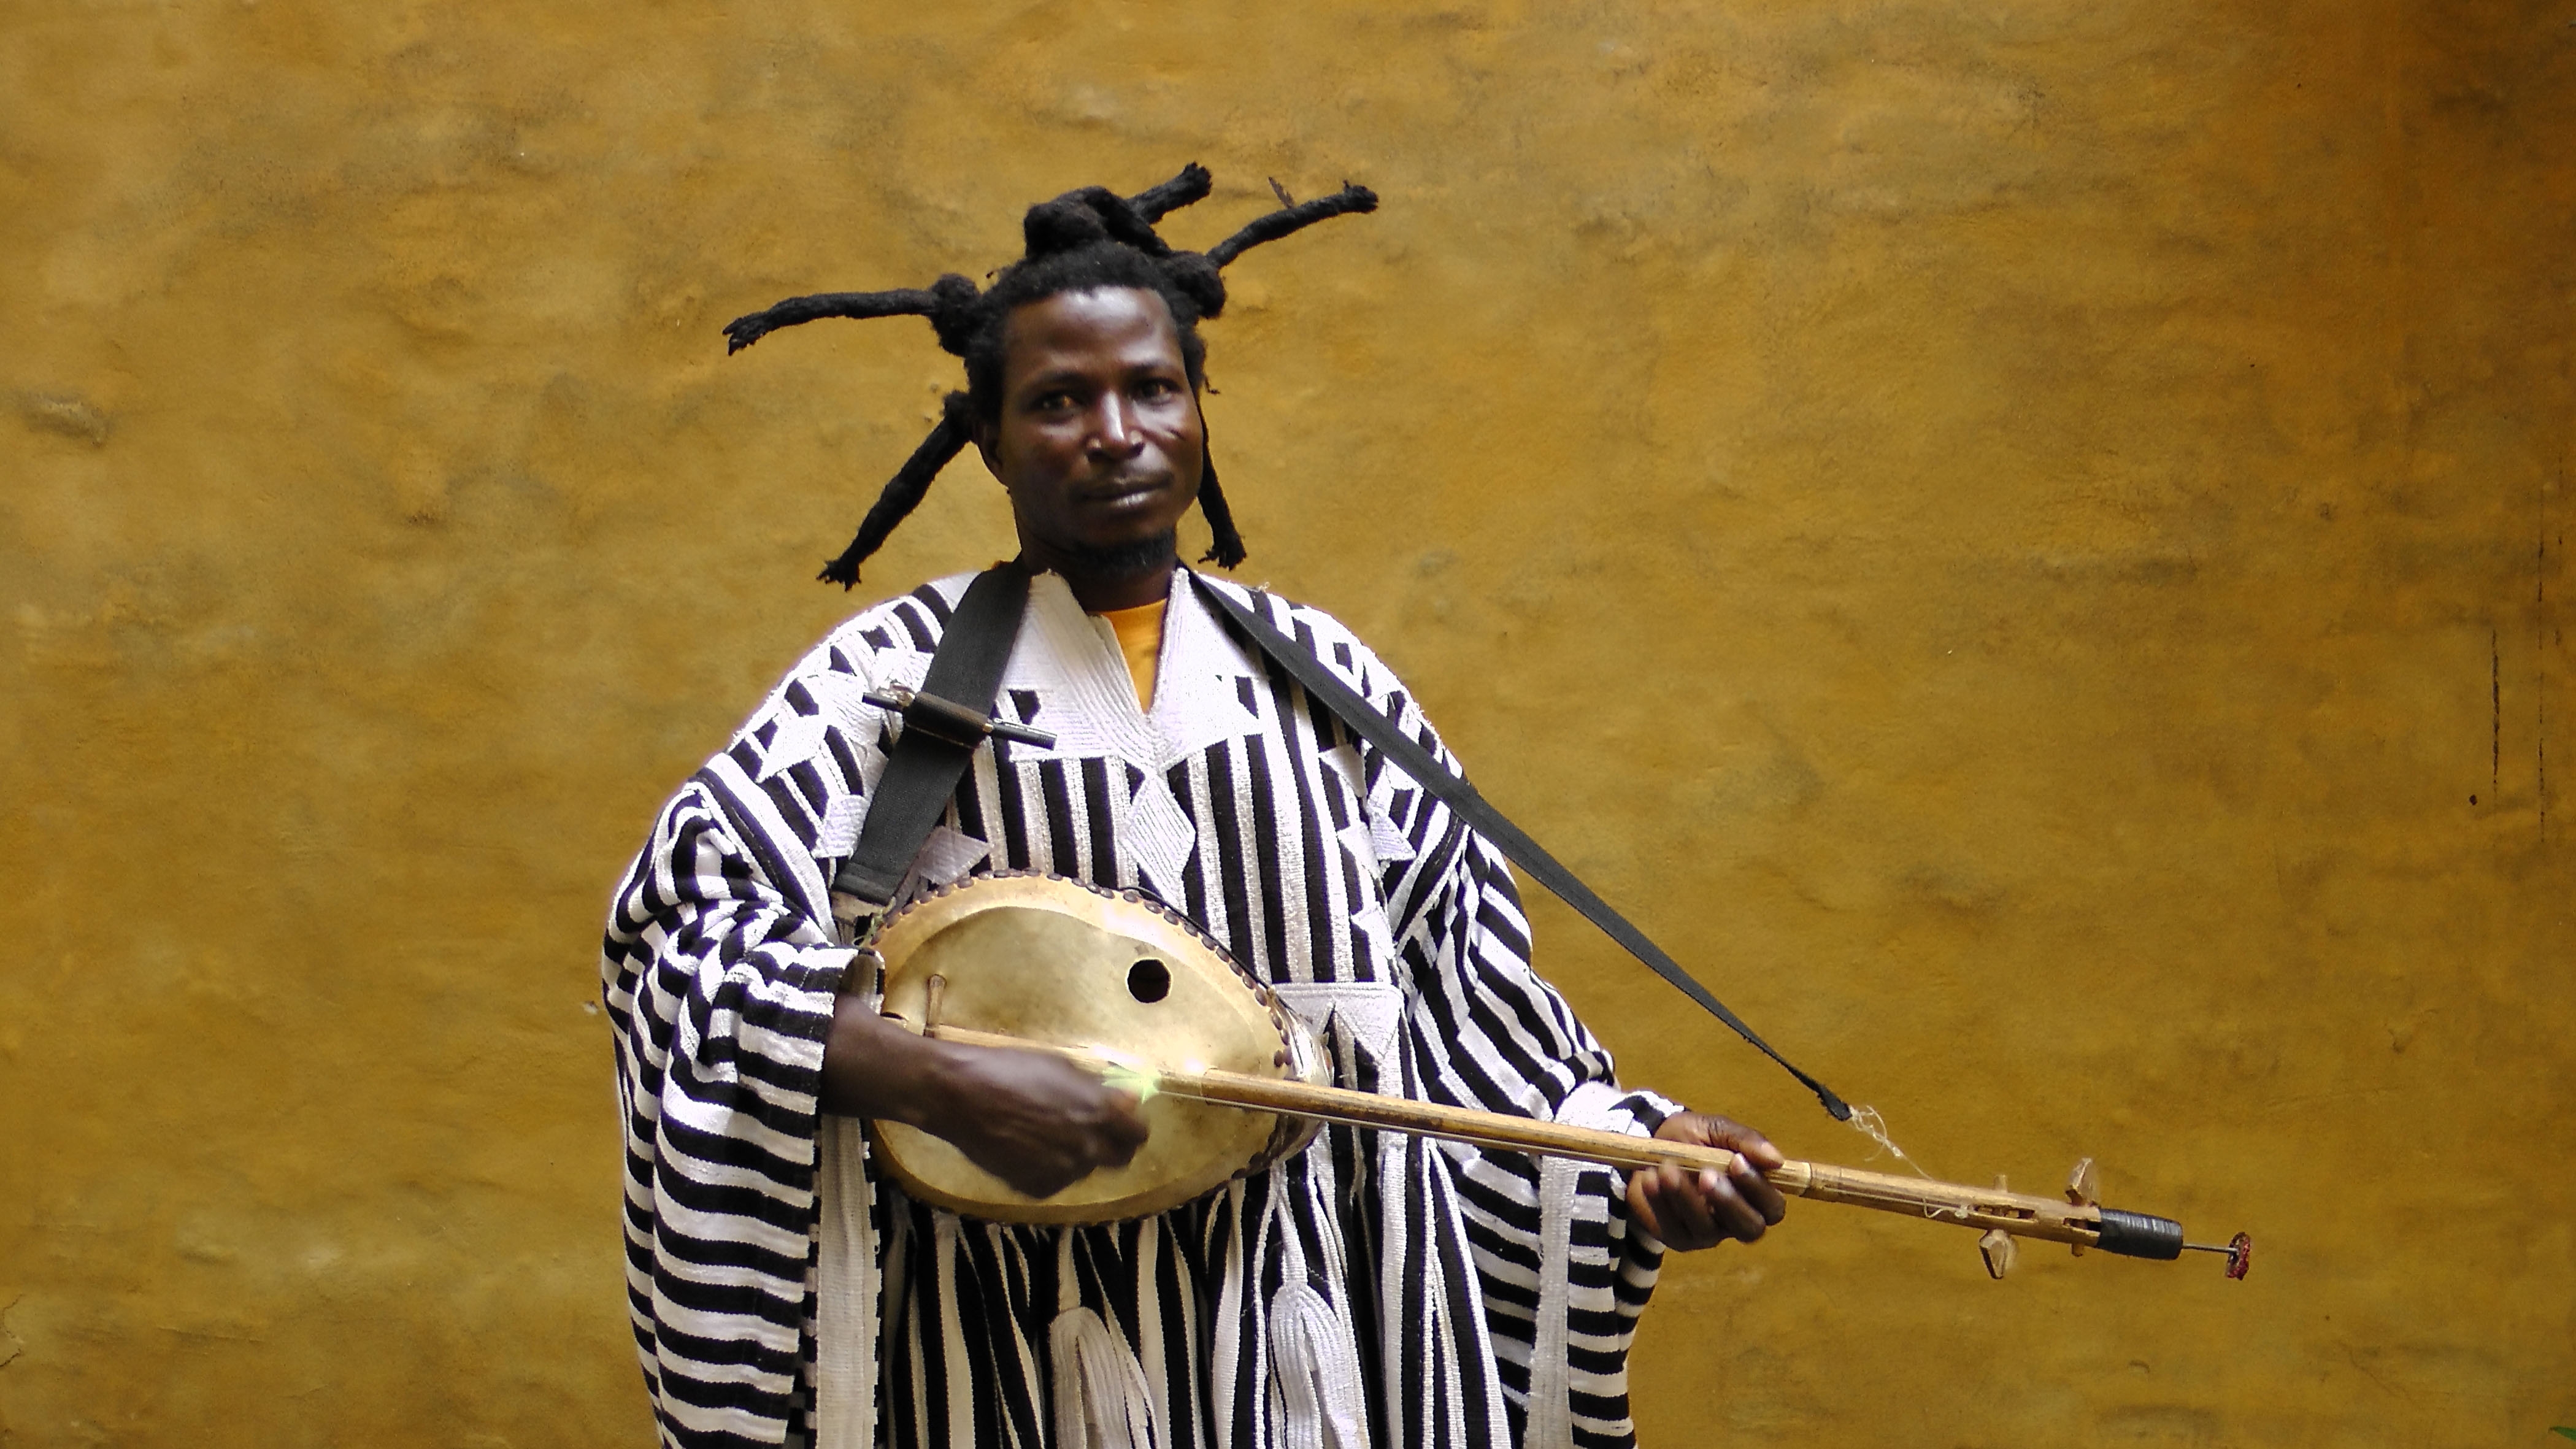 Инструменты народов африки